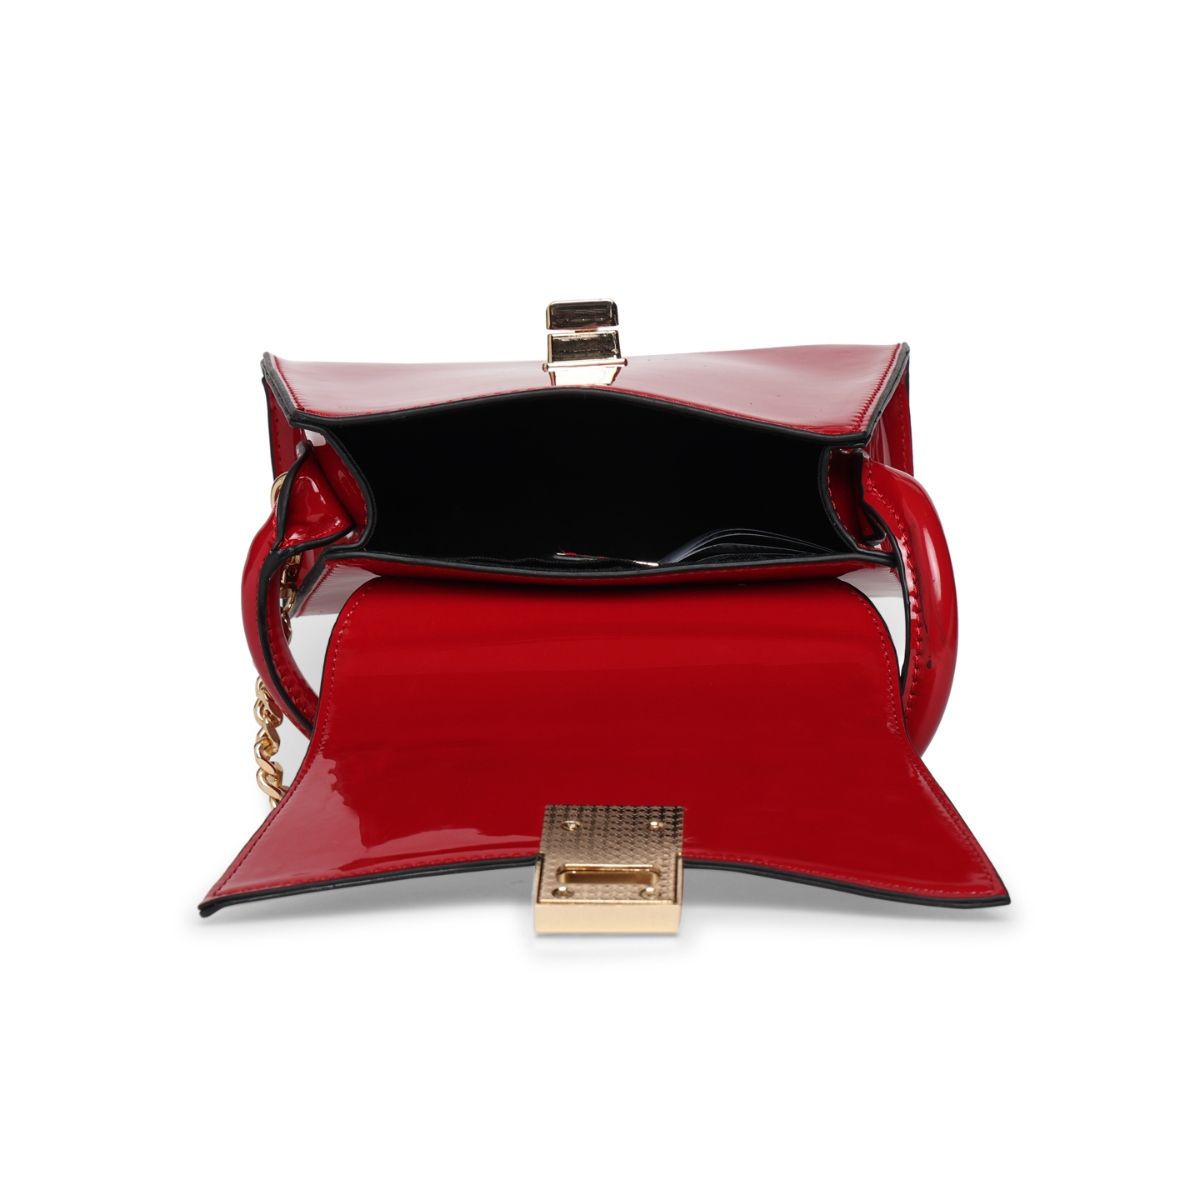 Buy Aldo Women's Tote Bag (Red) at Amazon.in